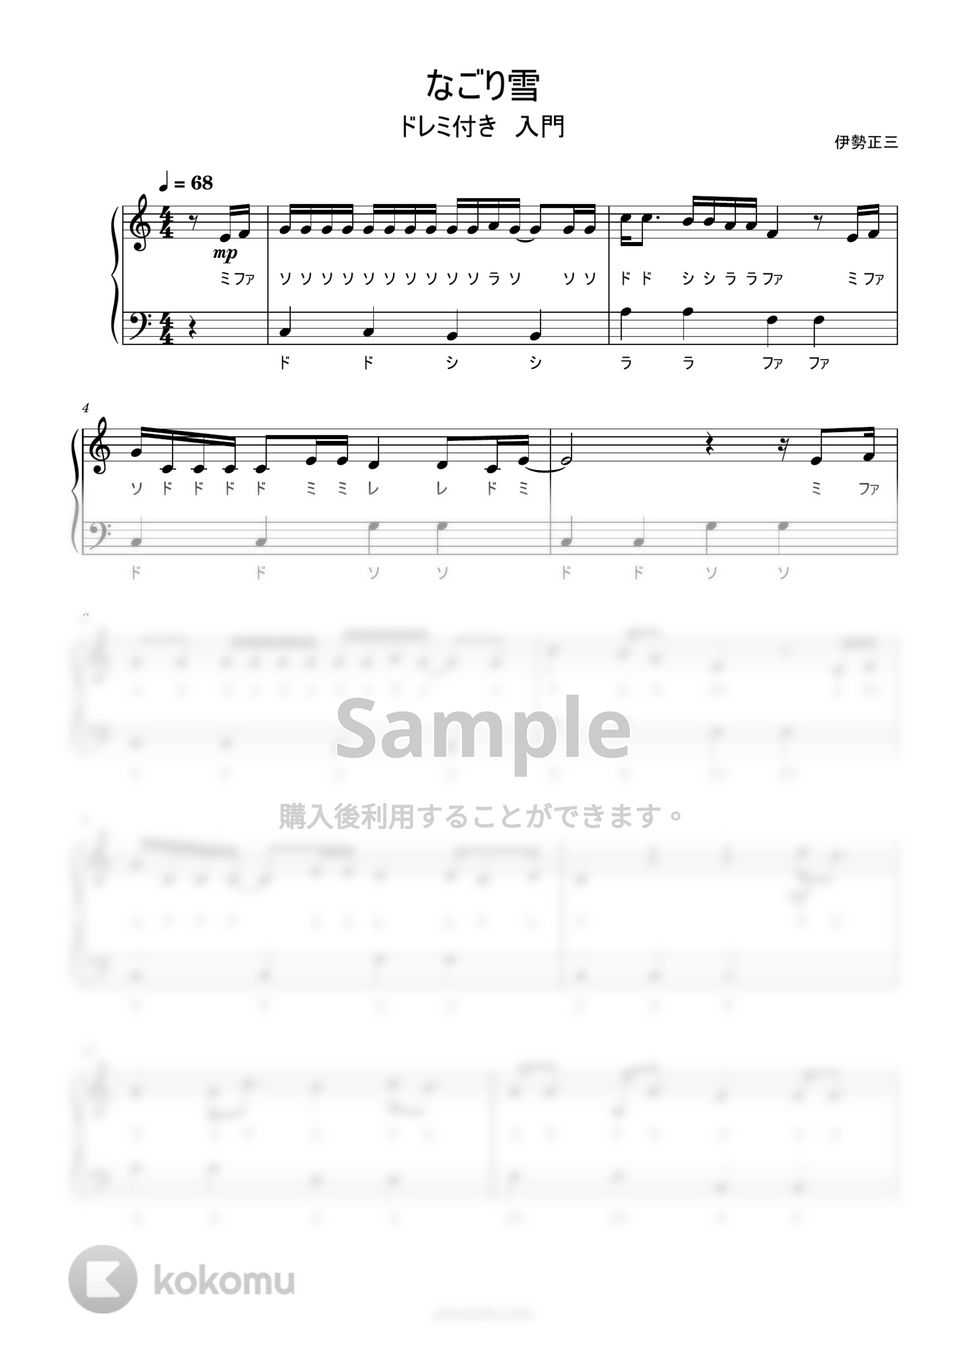 イルカ - なごり雪 (ドレミ付き簡単楽譜) by ピアノ塾